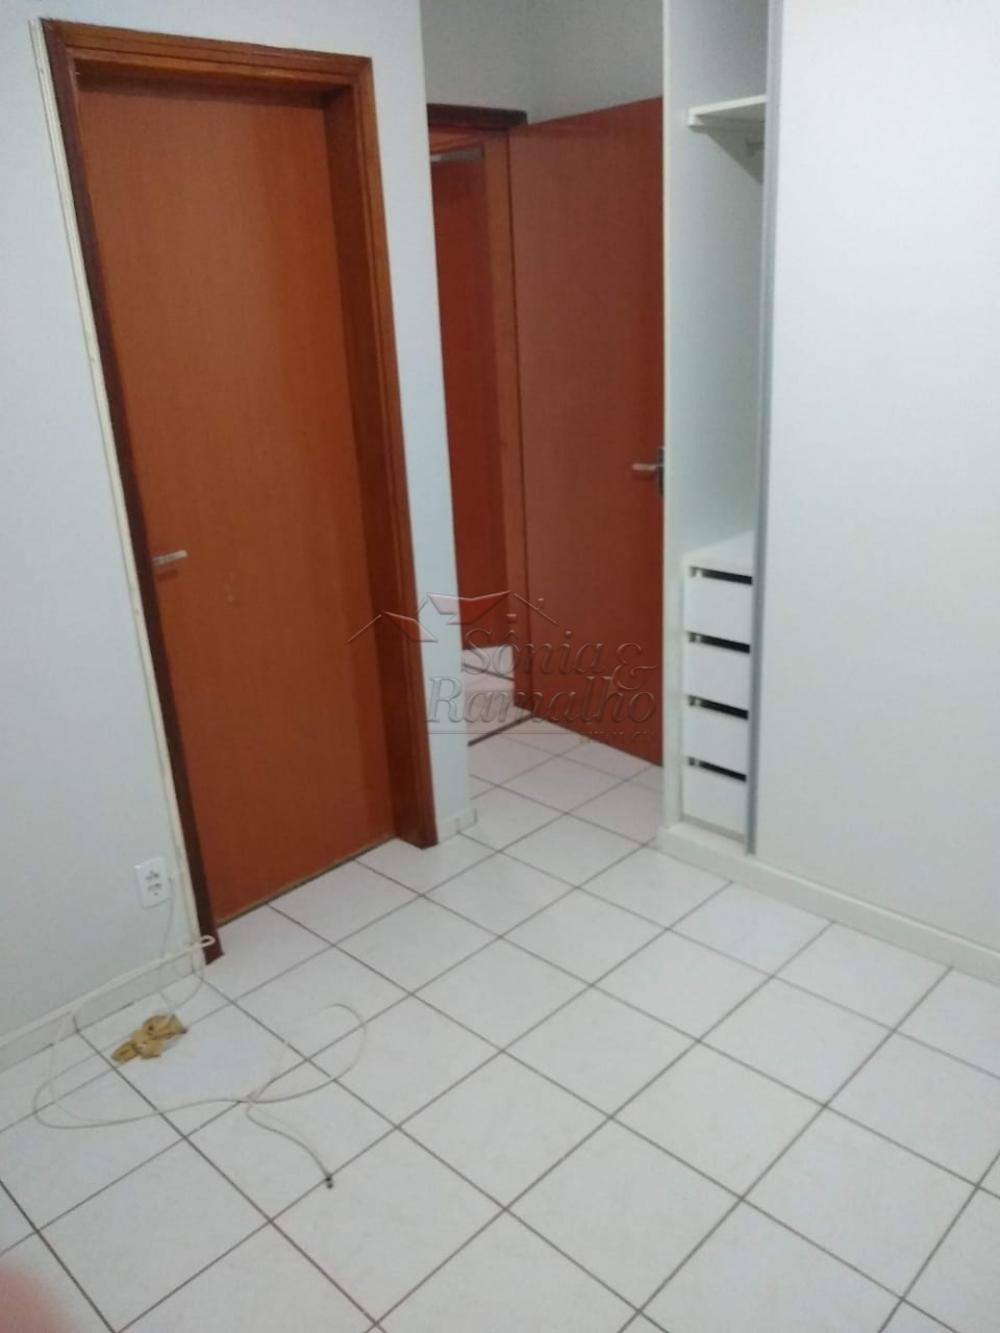 Alugar Apartamentos / Padrão em Ribeirão Preto R$ 700,00 - Foto 7